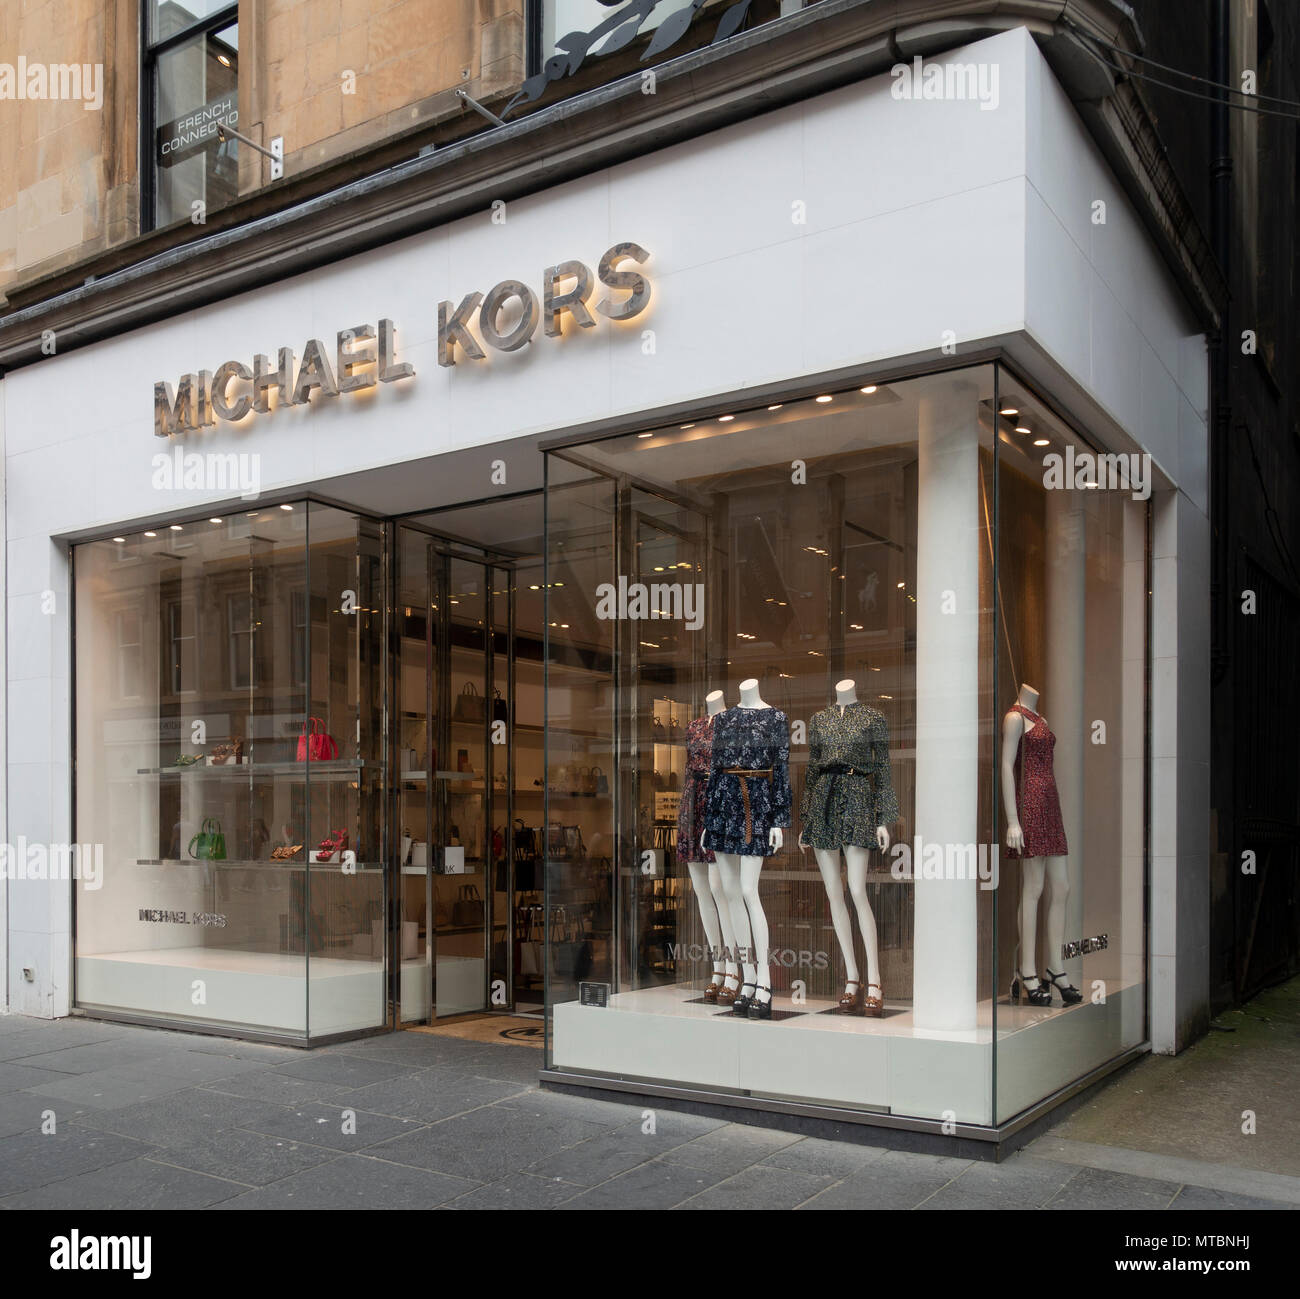 Womens' vestidos, bolsos y sandalias en exhibición en la tienda de Michael  Kors en Buchanan Street, Glasgow. Visualización de la ventana y abrir la  puerta de entrada. Escocia Fotografía de stock -